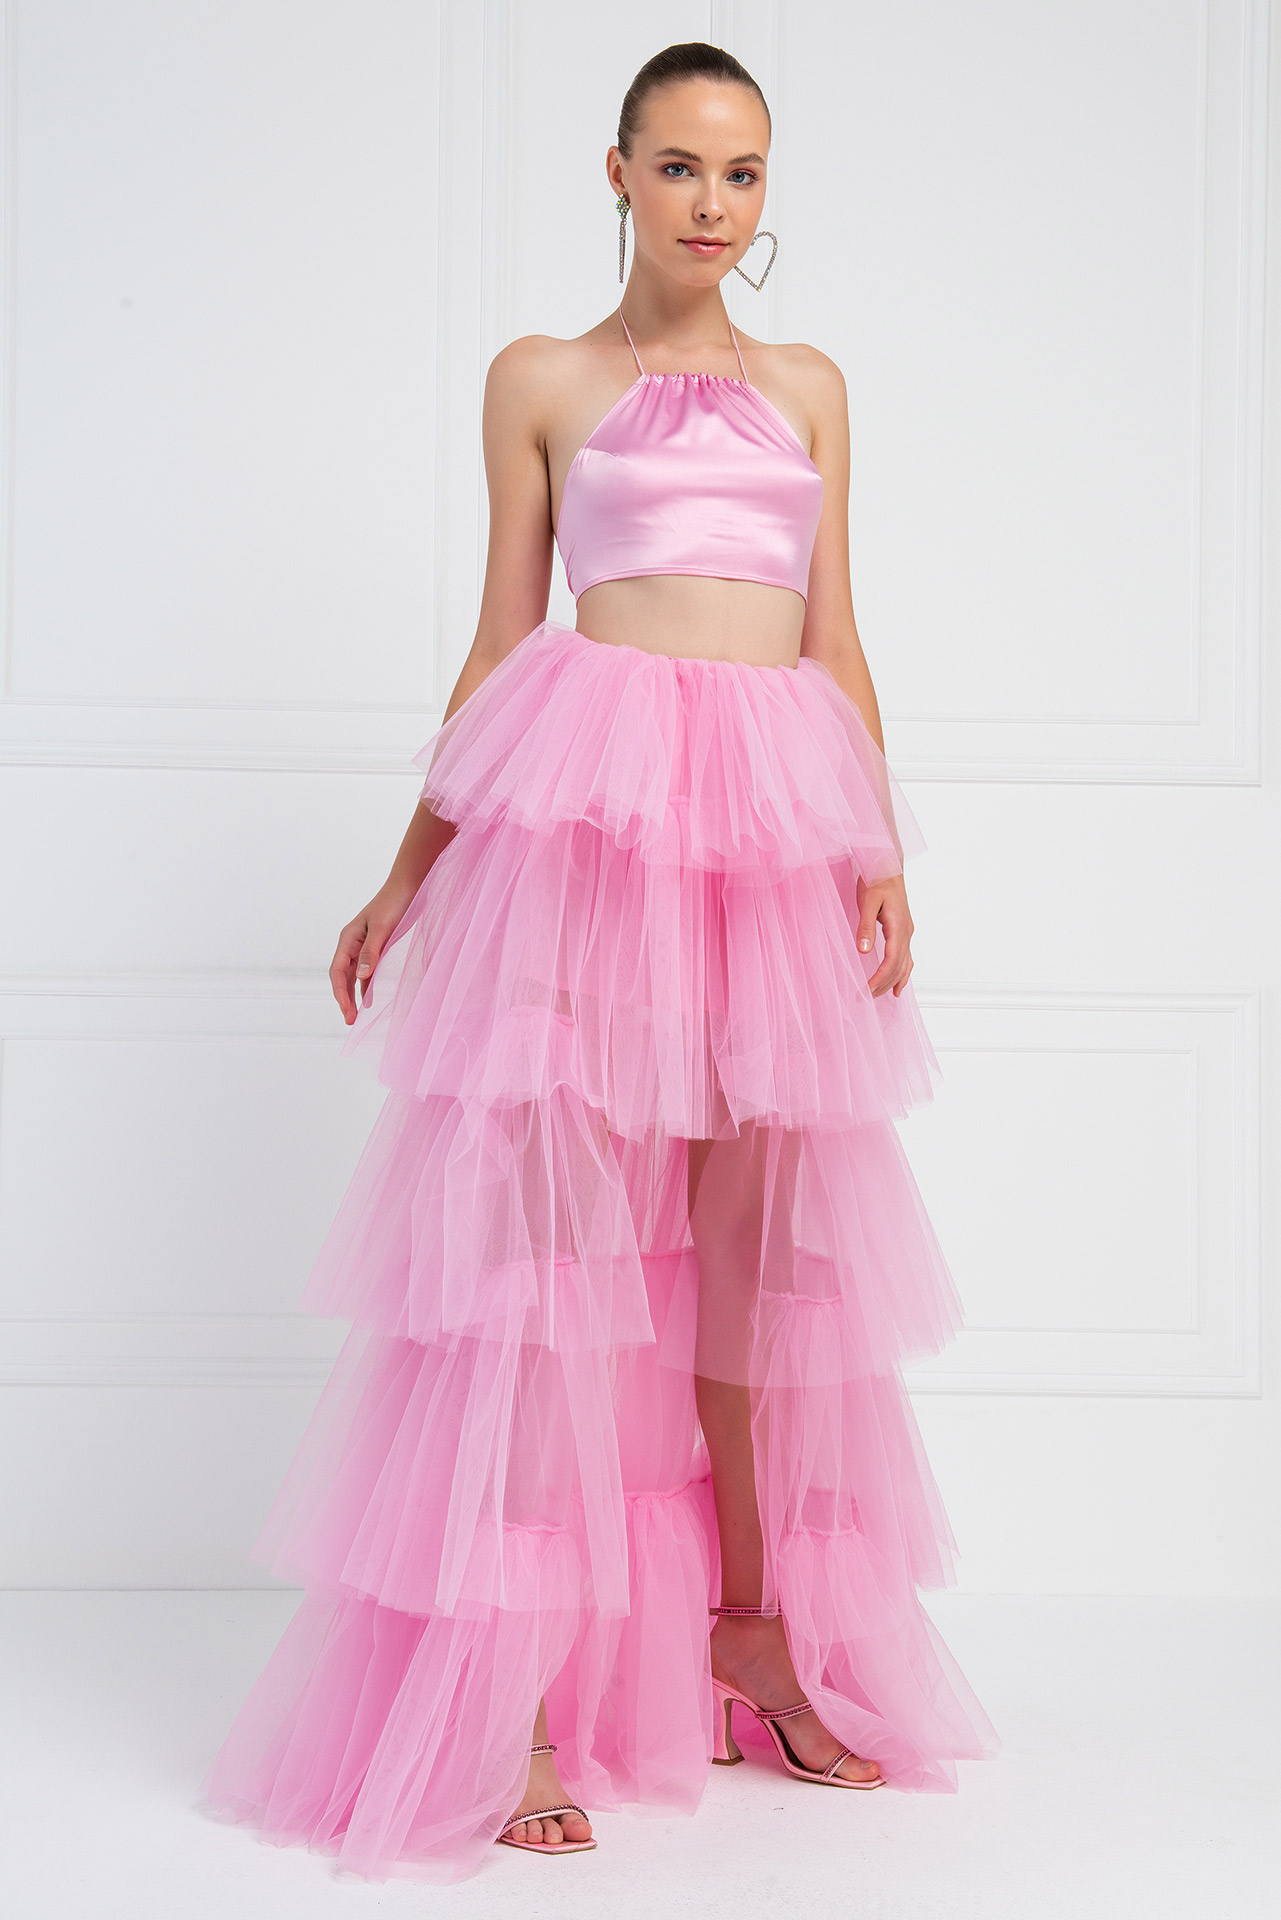 New Pink Mini Tulle Skirt